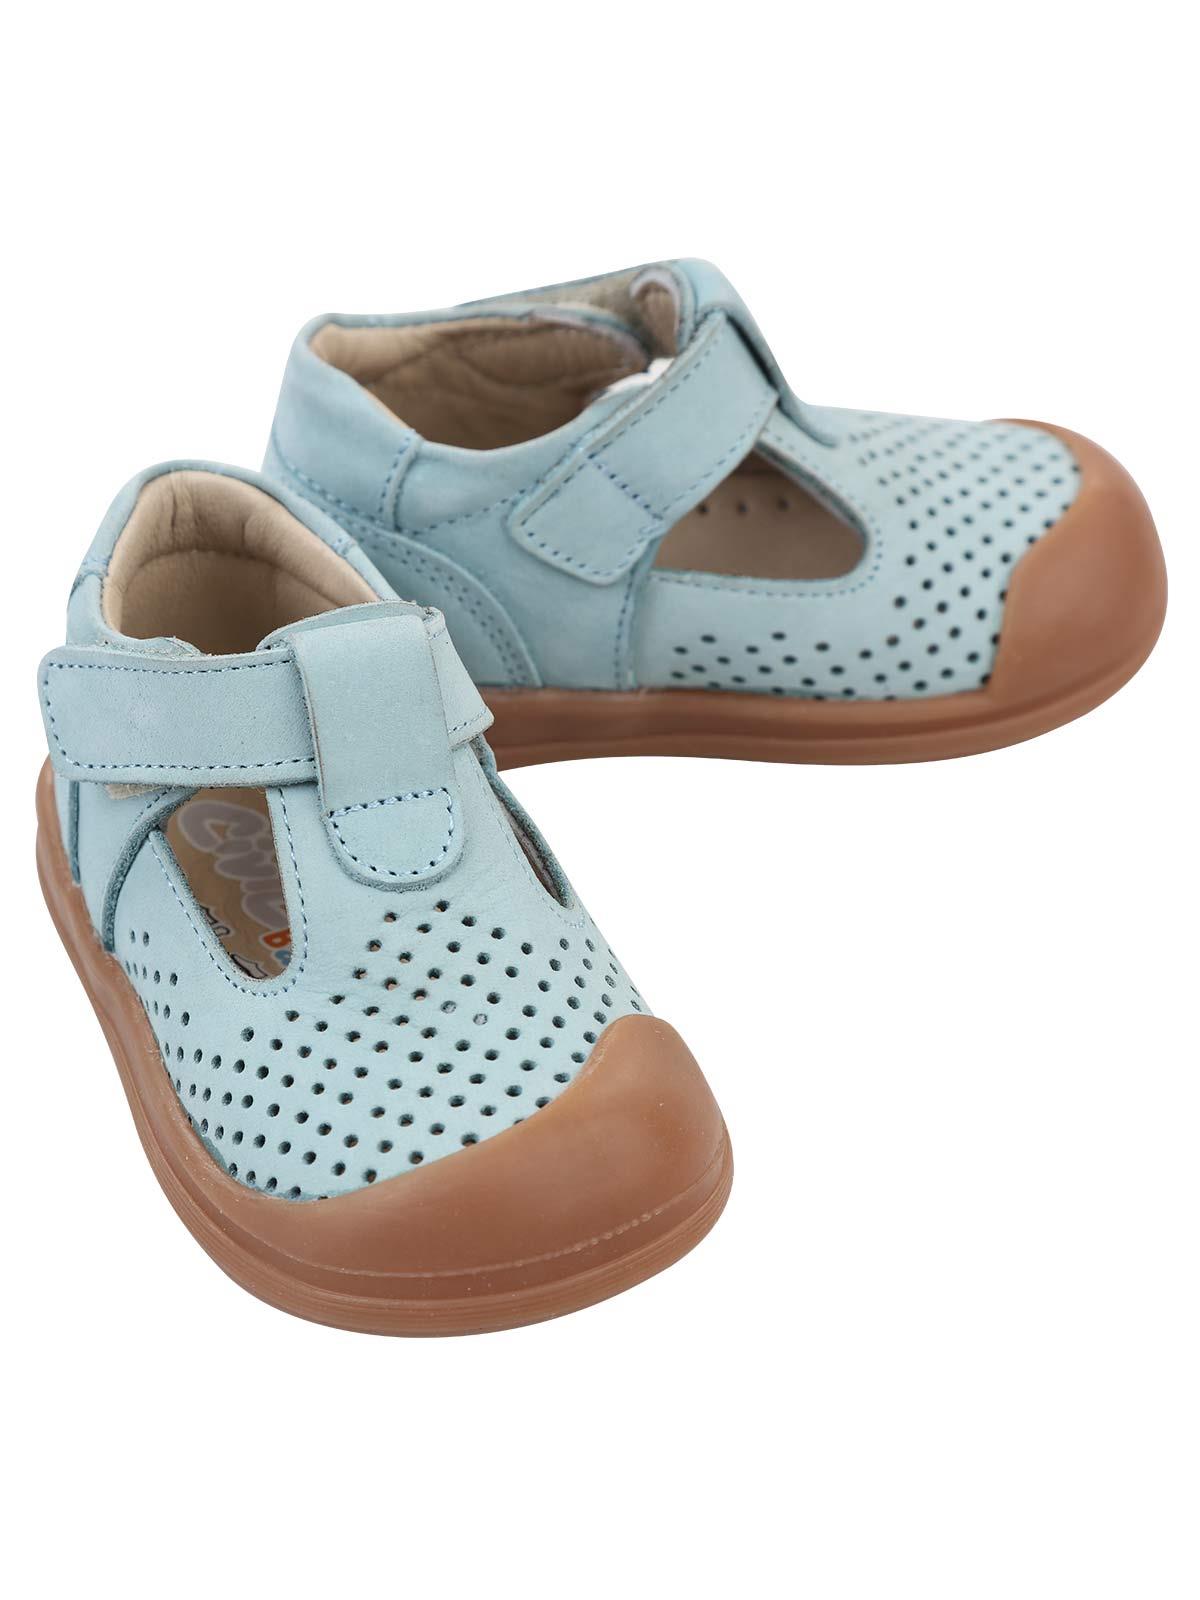 Civil Baby Erkek Bebek İlk Adım Ayakkabısı 19-21 Numara Mavi